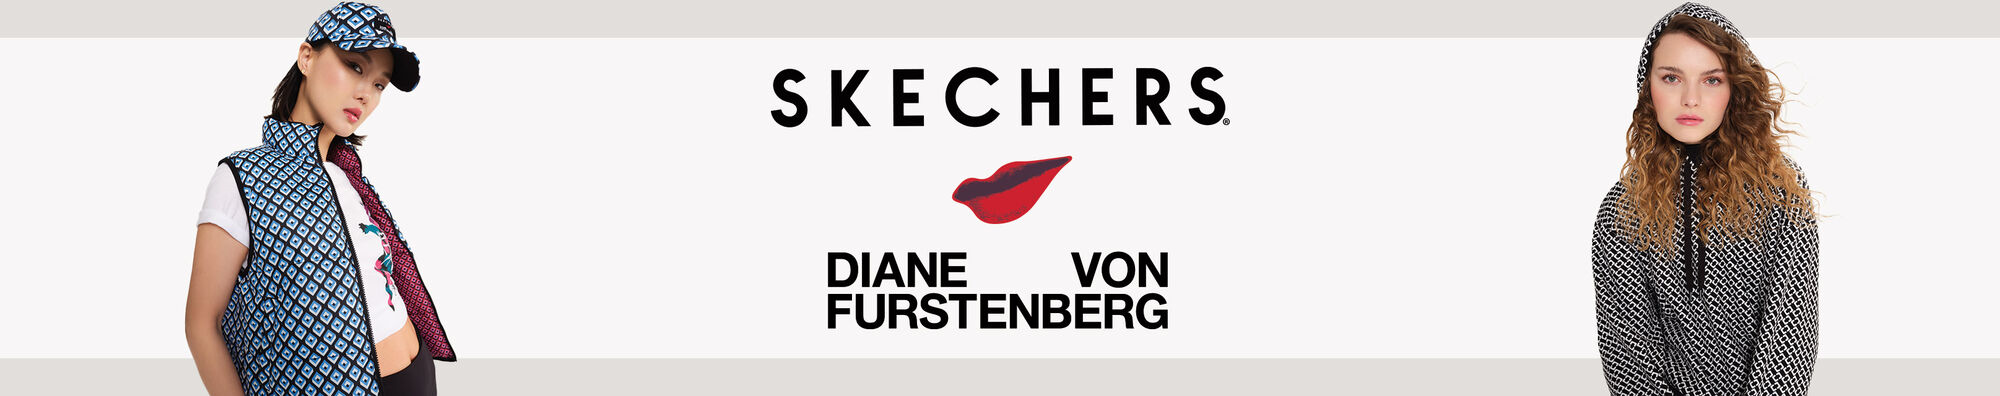 Skechers Launches Fashion Collaboration With Diane von Furstenberg